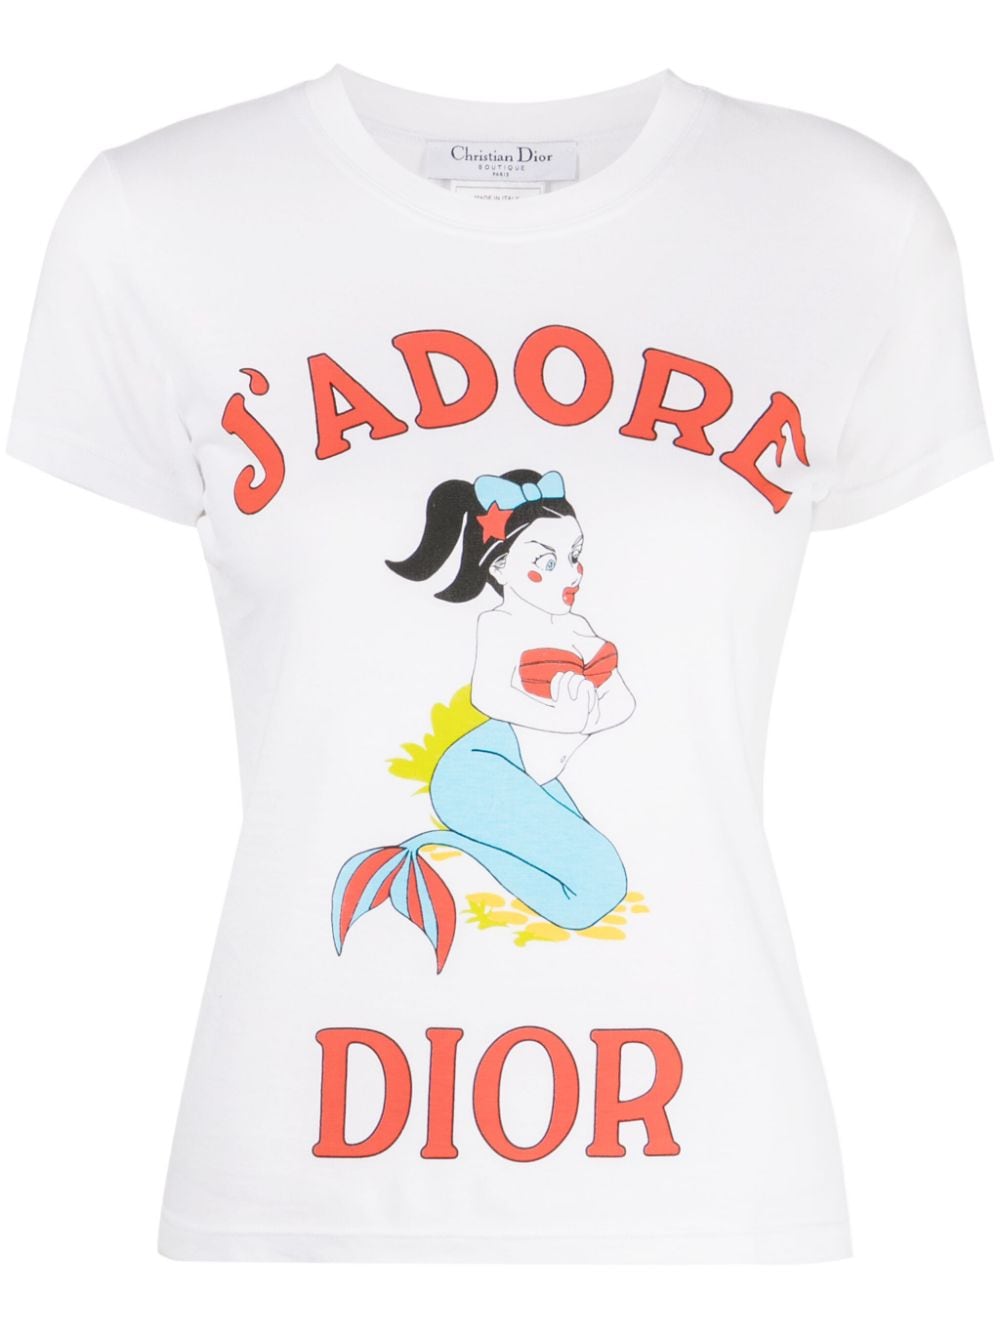 Christian Dior Pre-Owned 2002 J'AdoreDior Tシャツ - Farfetch